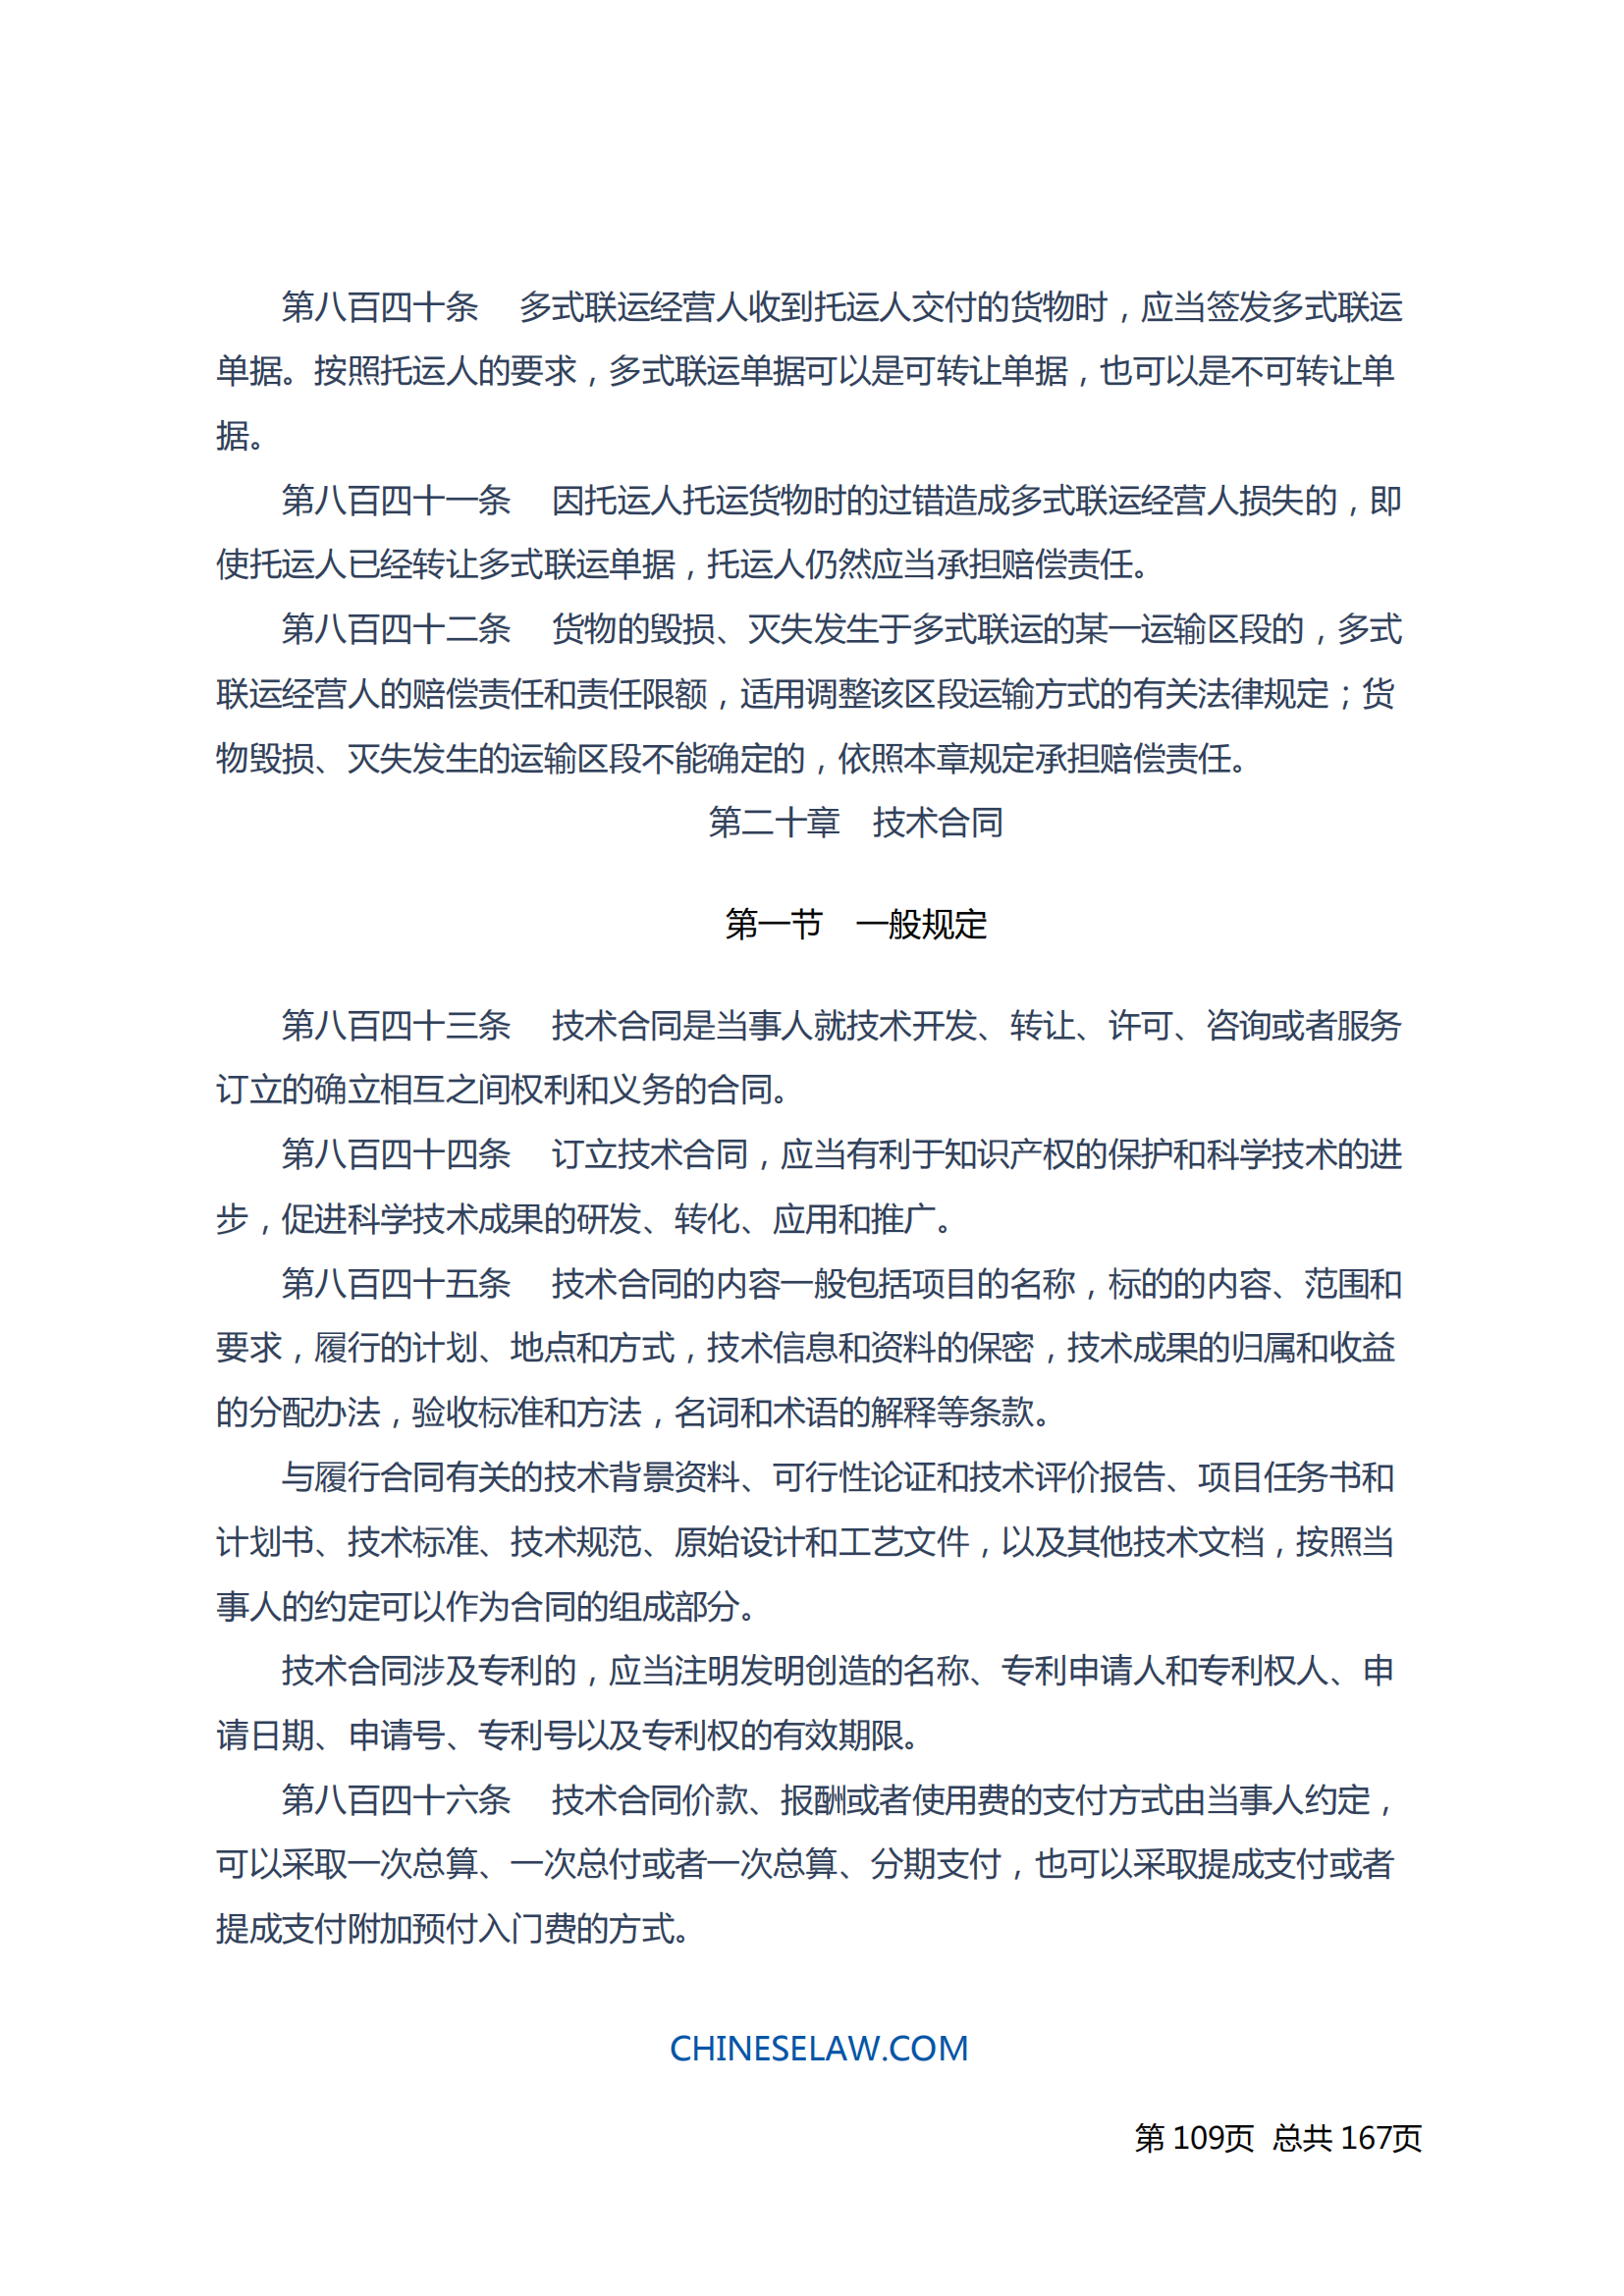 中华人民共和国民法典_108